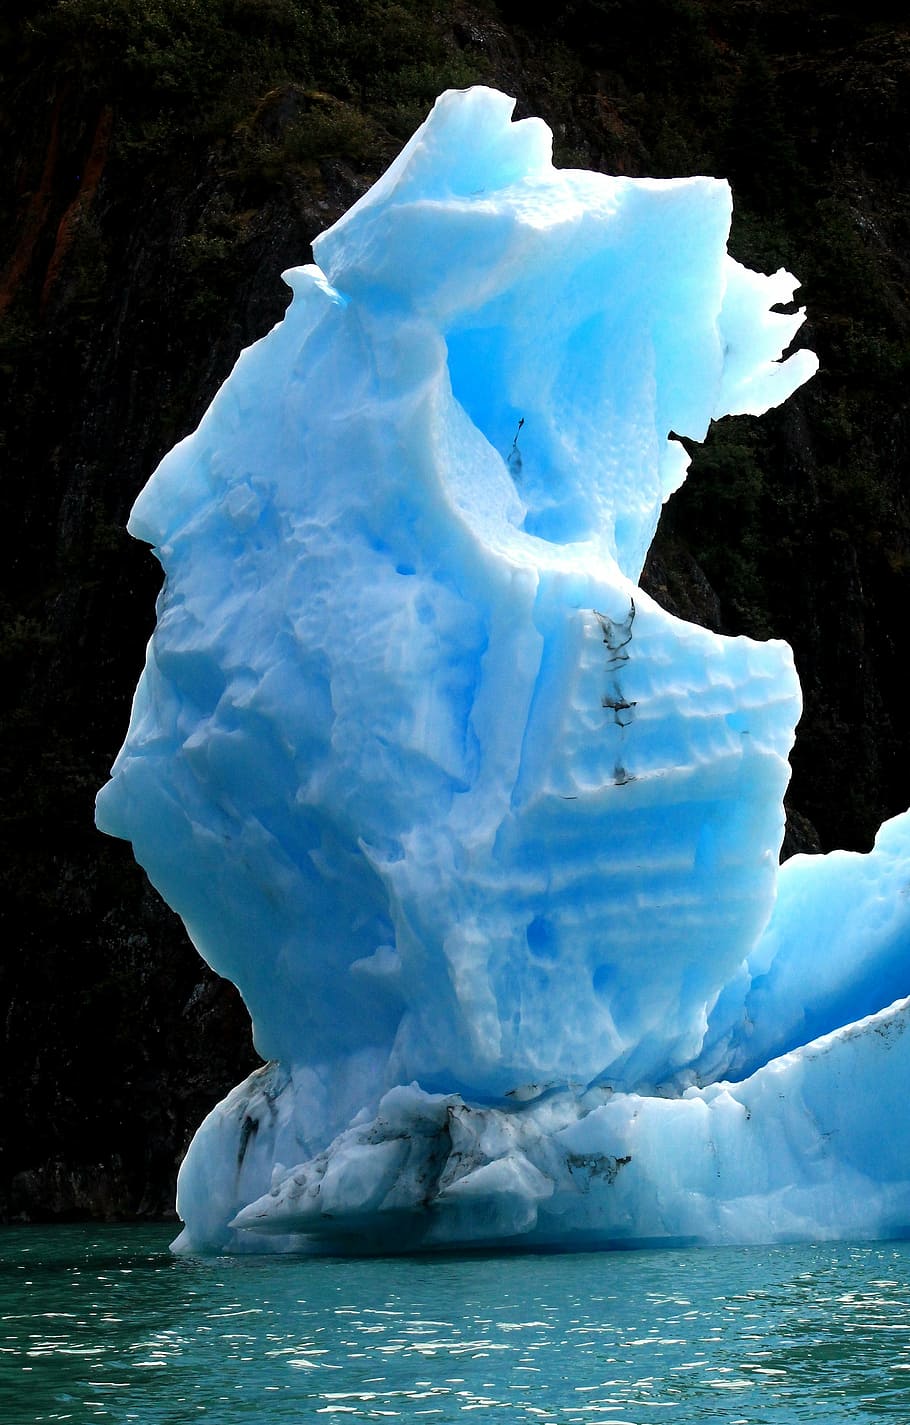 ice burg, iceberg, azul, fiordo, congelado, flotante, glacial, hielo, agua, naturaleza